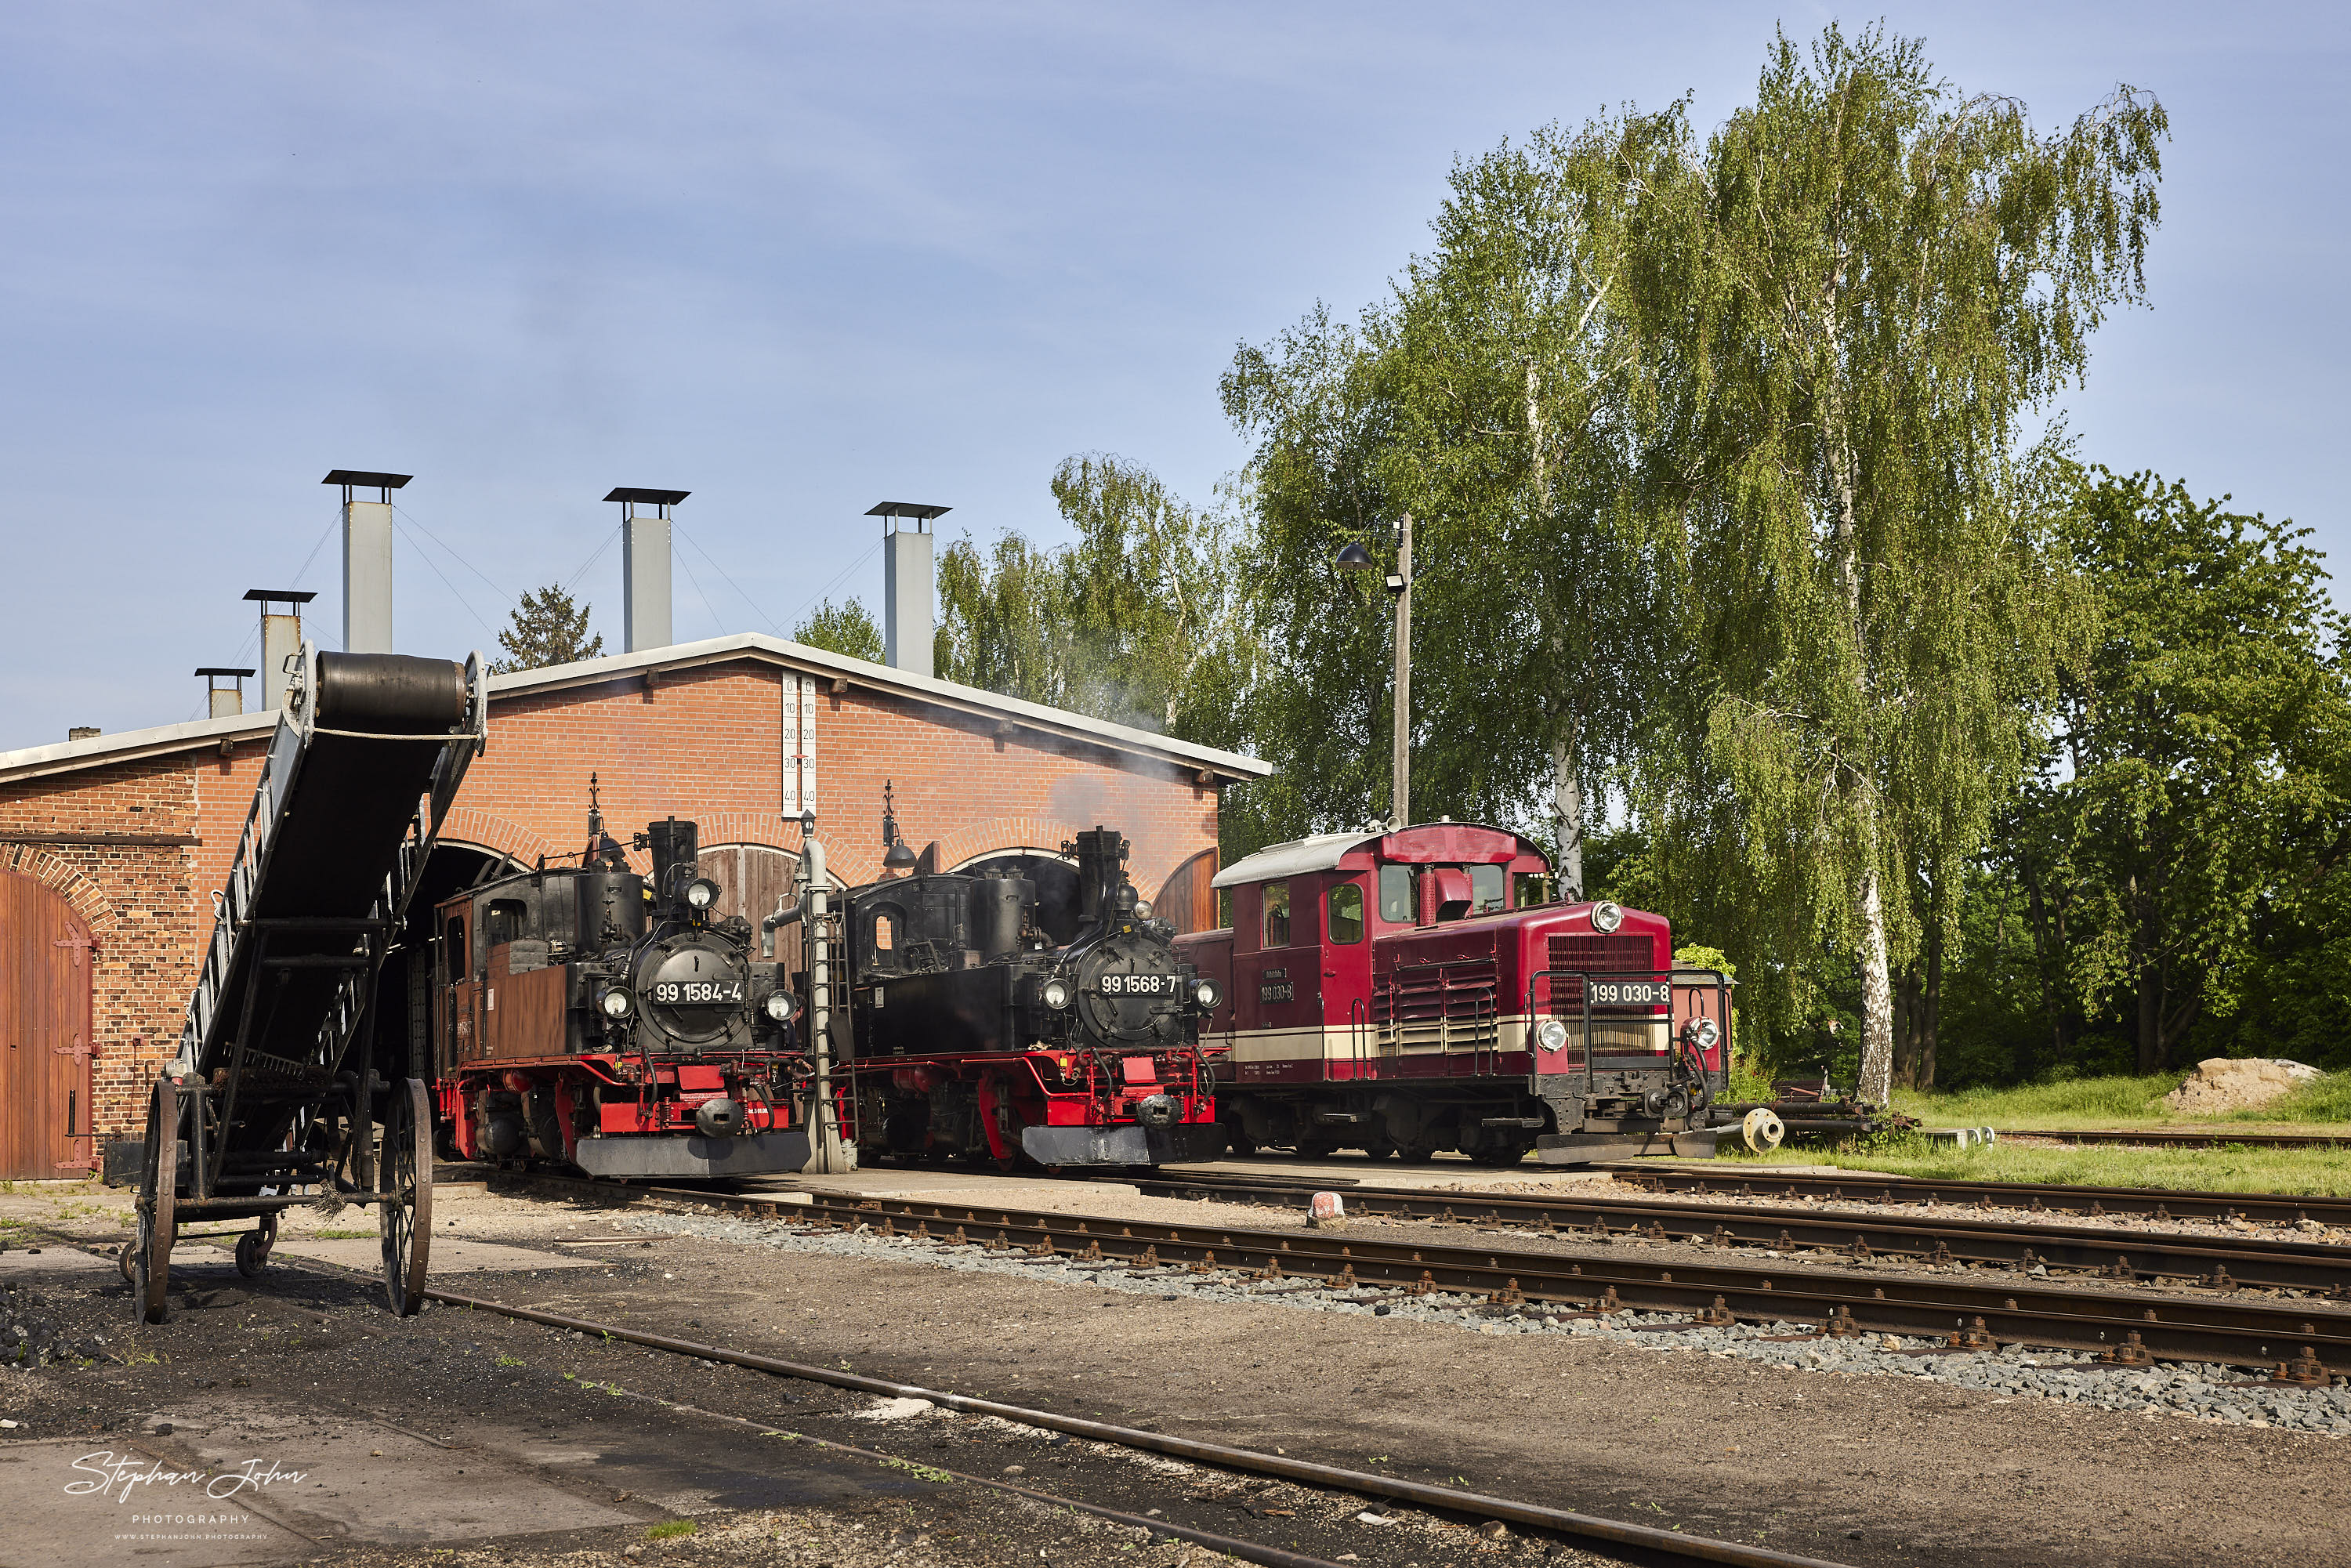 Lokparade mit der Lok 99 1584-4, der Lok 99 1568-7 von der Preßnitztalbahn und der Diesellok 199 030-8 vor dem Lokschuppen in Mügeln